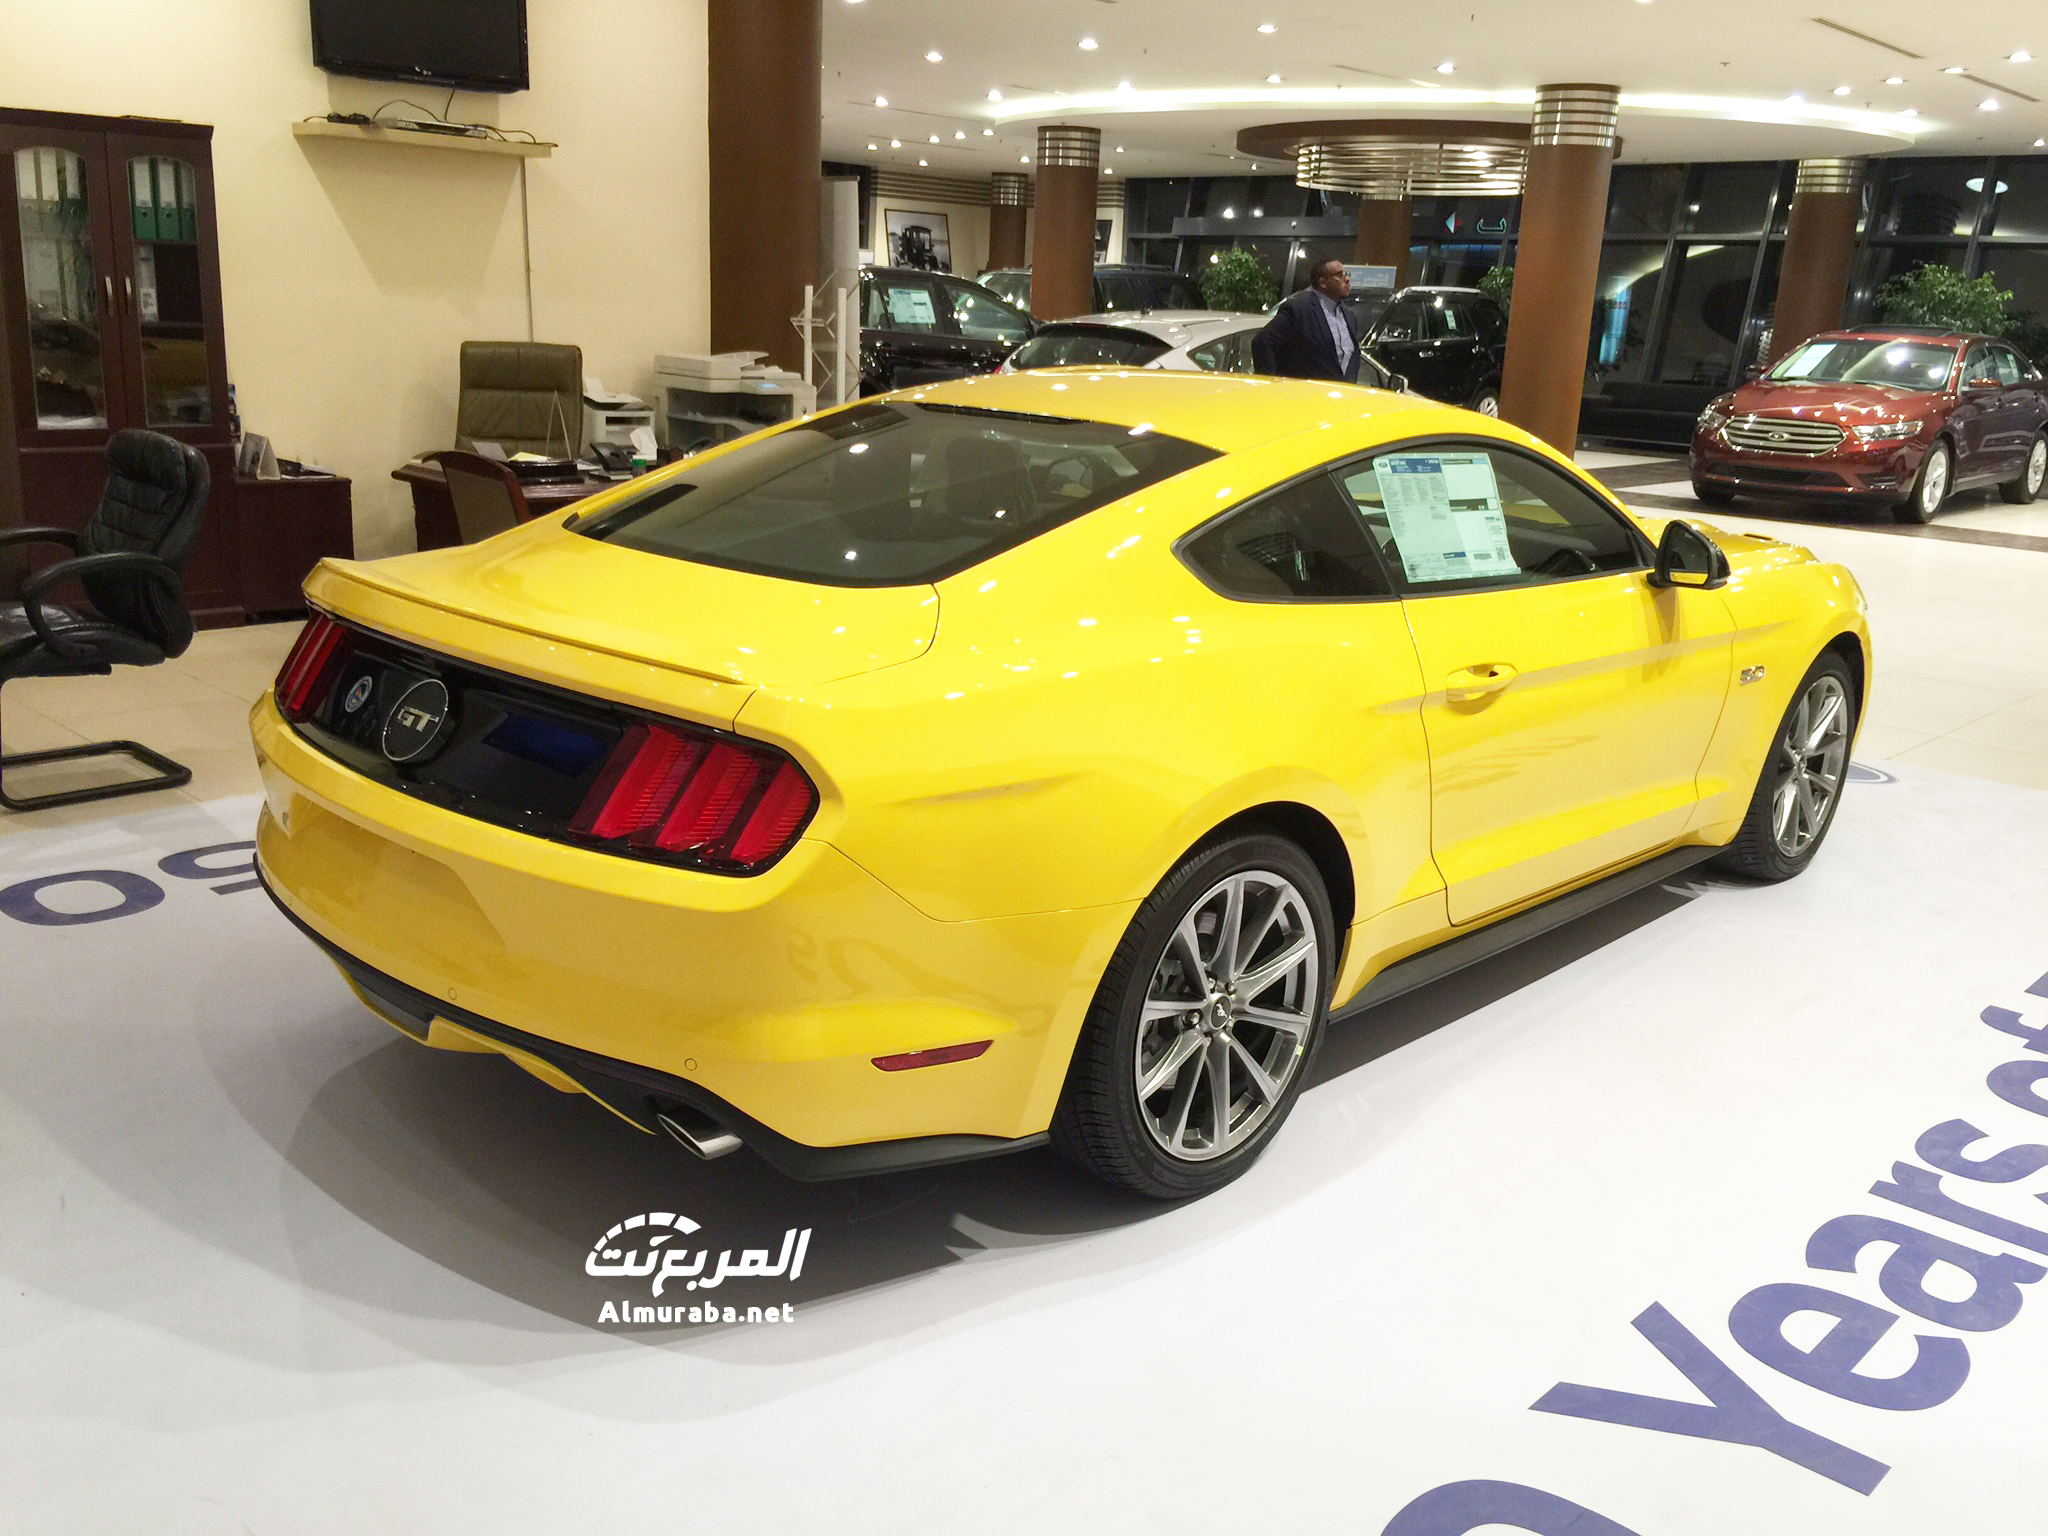  فورد موستنج 2015 الجديدة تصل الى السعودية “تقرير ومواصفات واسعار وصور” Ford Mustang IMG_1731